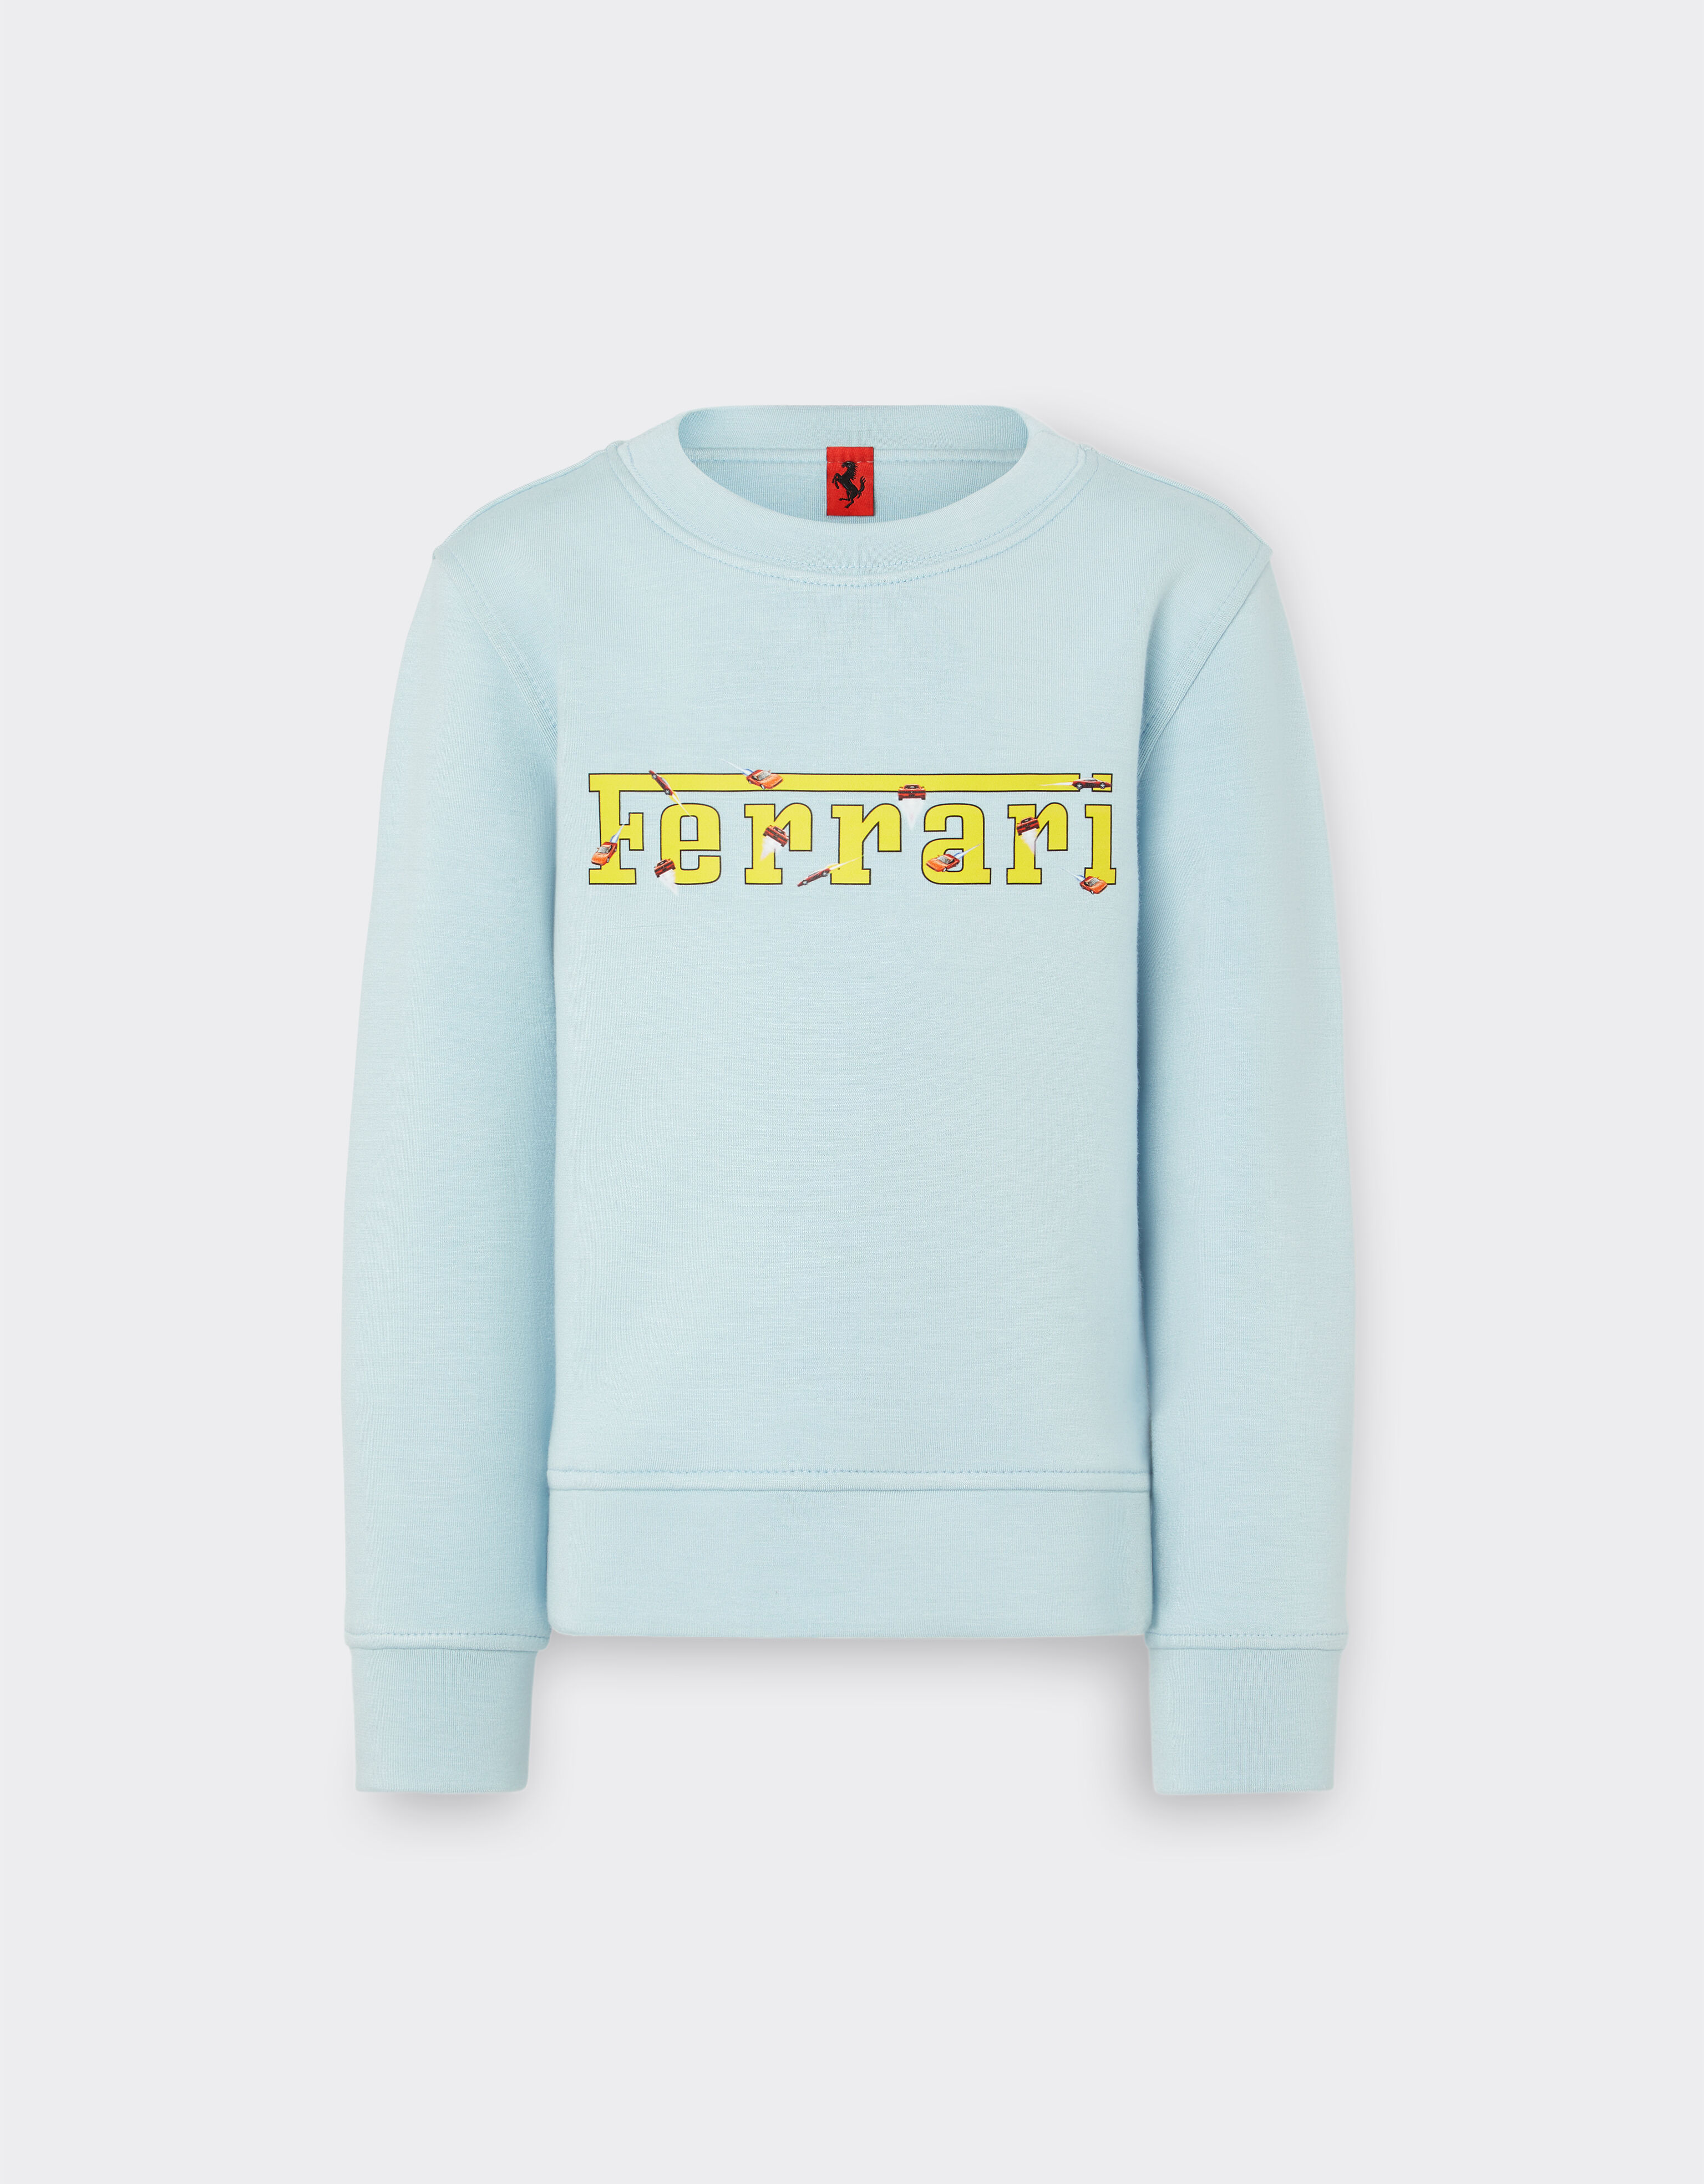 Ferrari Jungen-Sweatshirt aus Scuba mit Ferrari-Logo Blau 20159fK